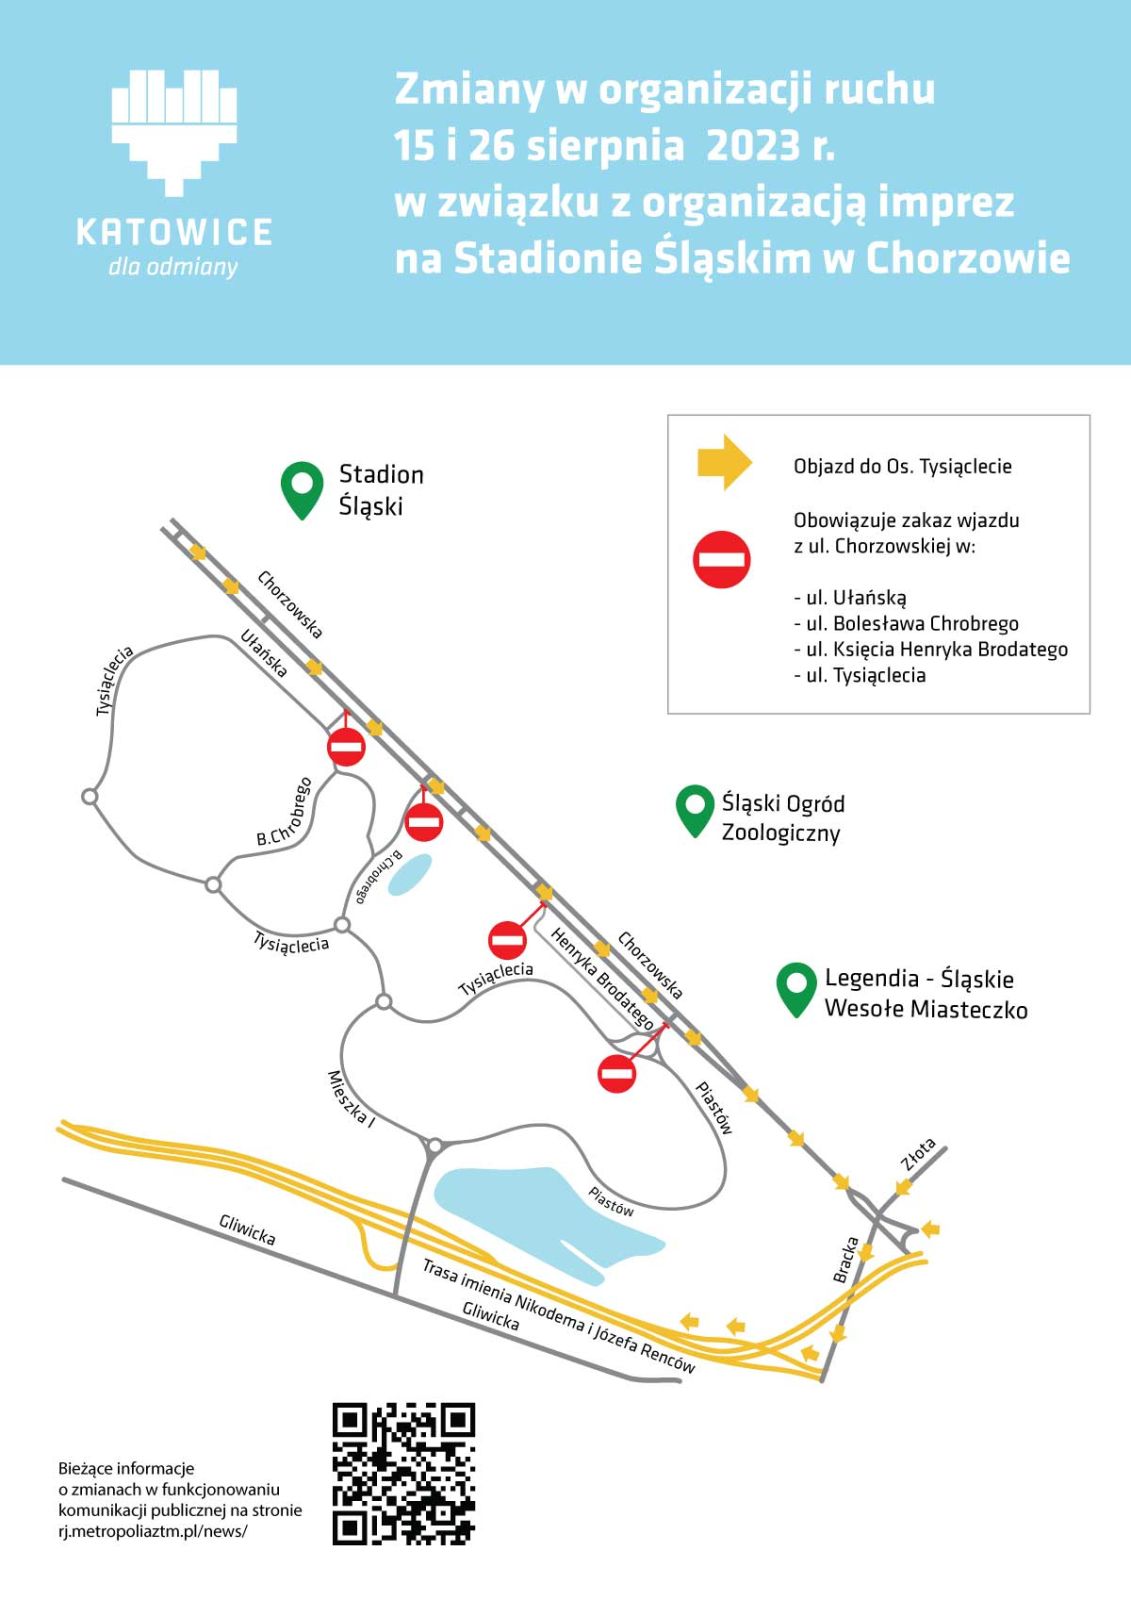 Infografika, zmiana organizacji ruchu na Osiedlu Tysiąclecia w Katowicach